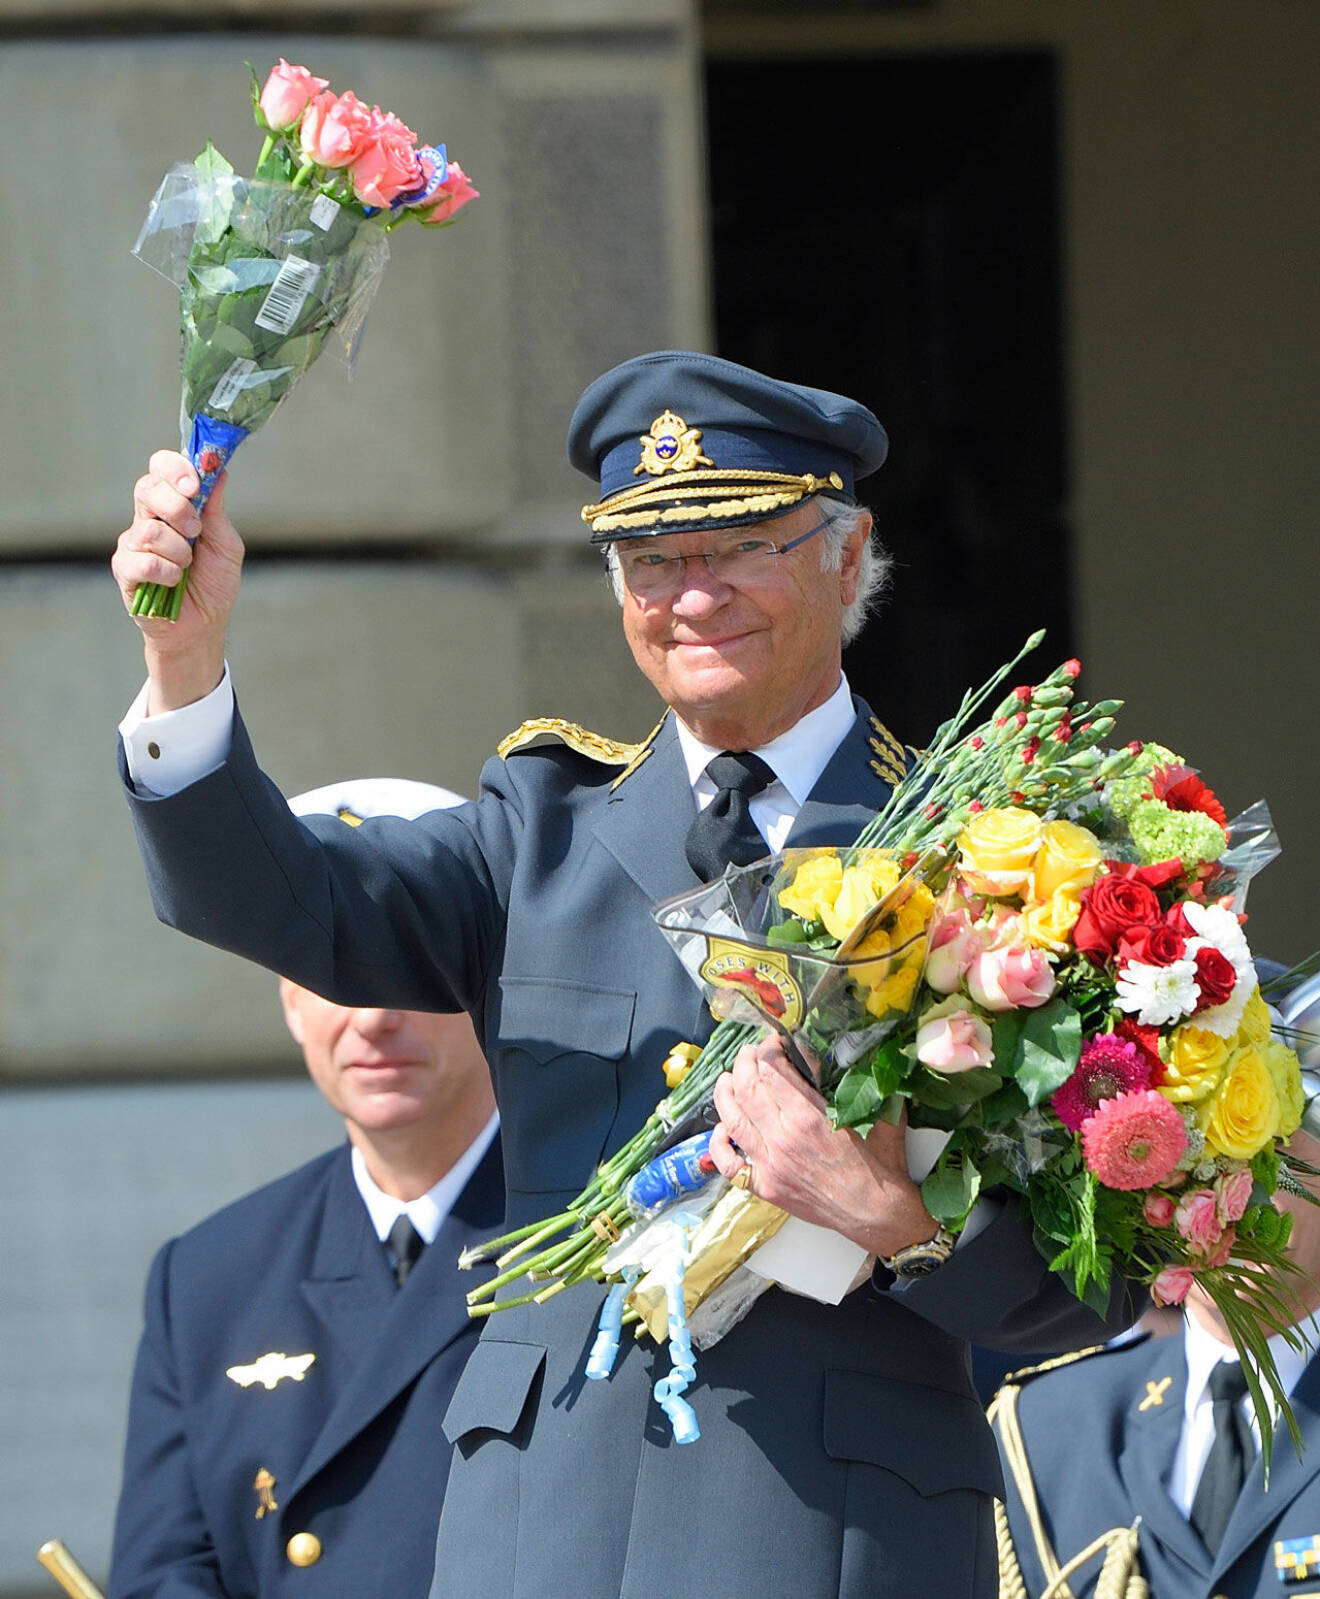 Kungens födelsedag. Carl Gustaf med blombuketter